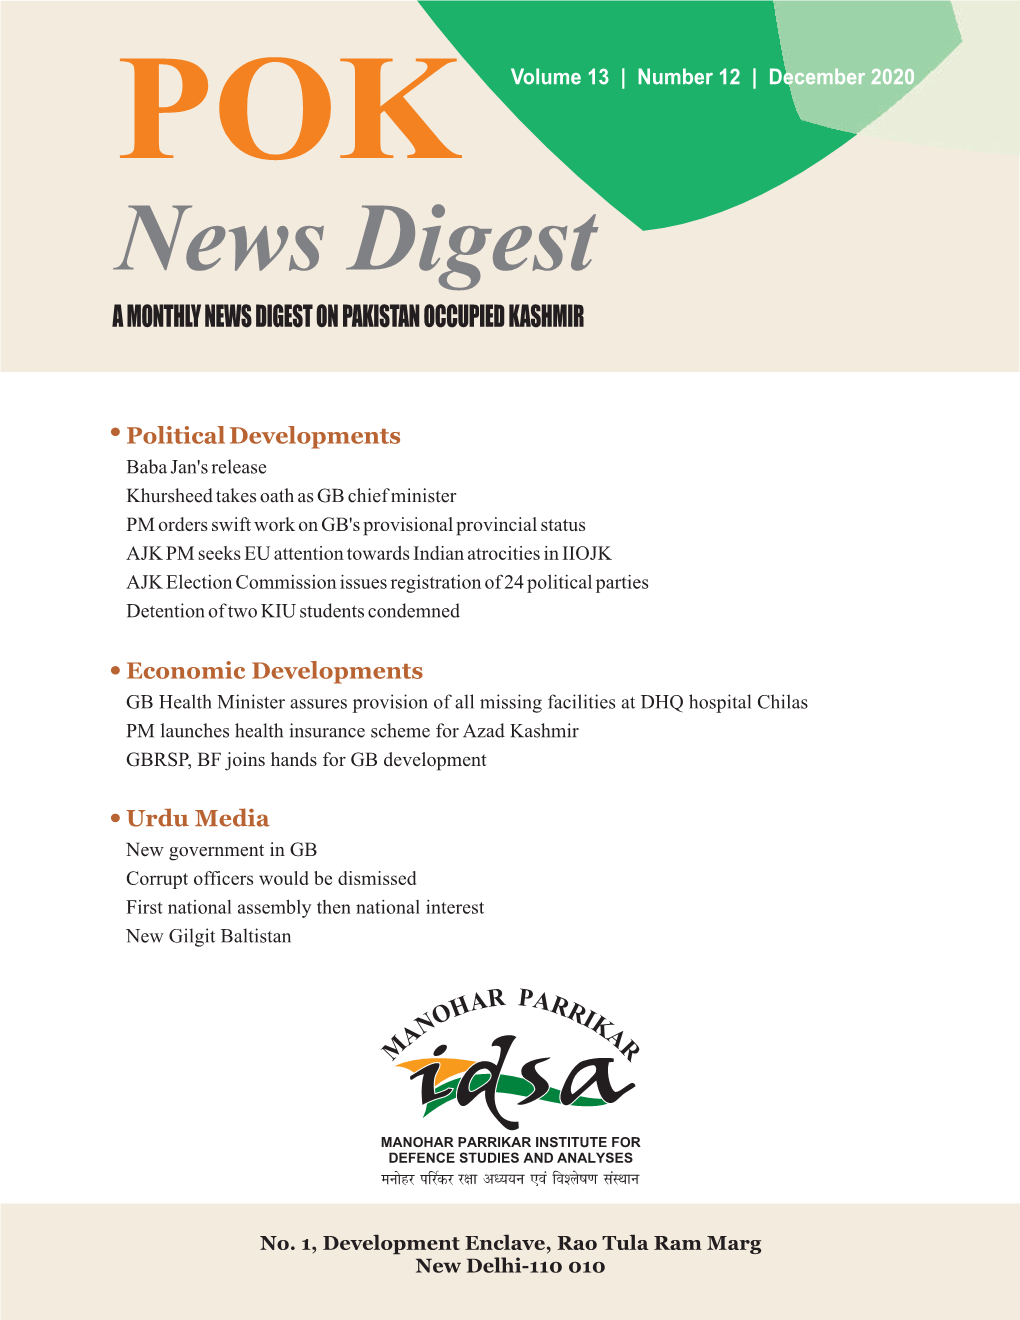 December 2020 News Digest a MONTHLY NEWS DIGEST on PAKISTAN OCCUPIED KASHMIR